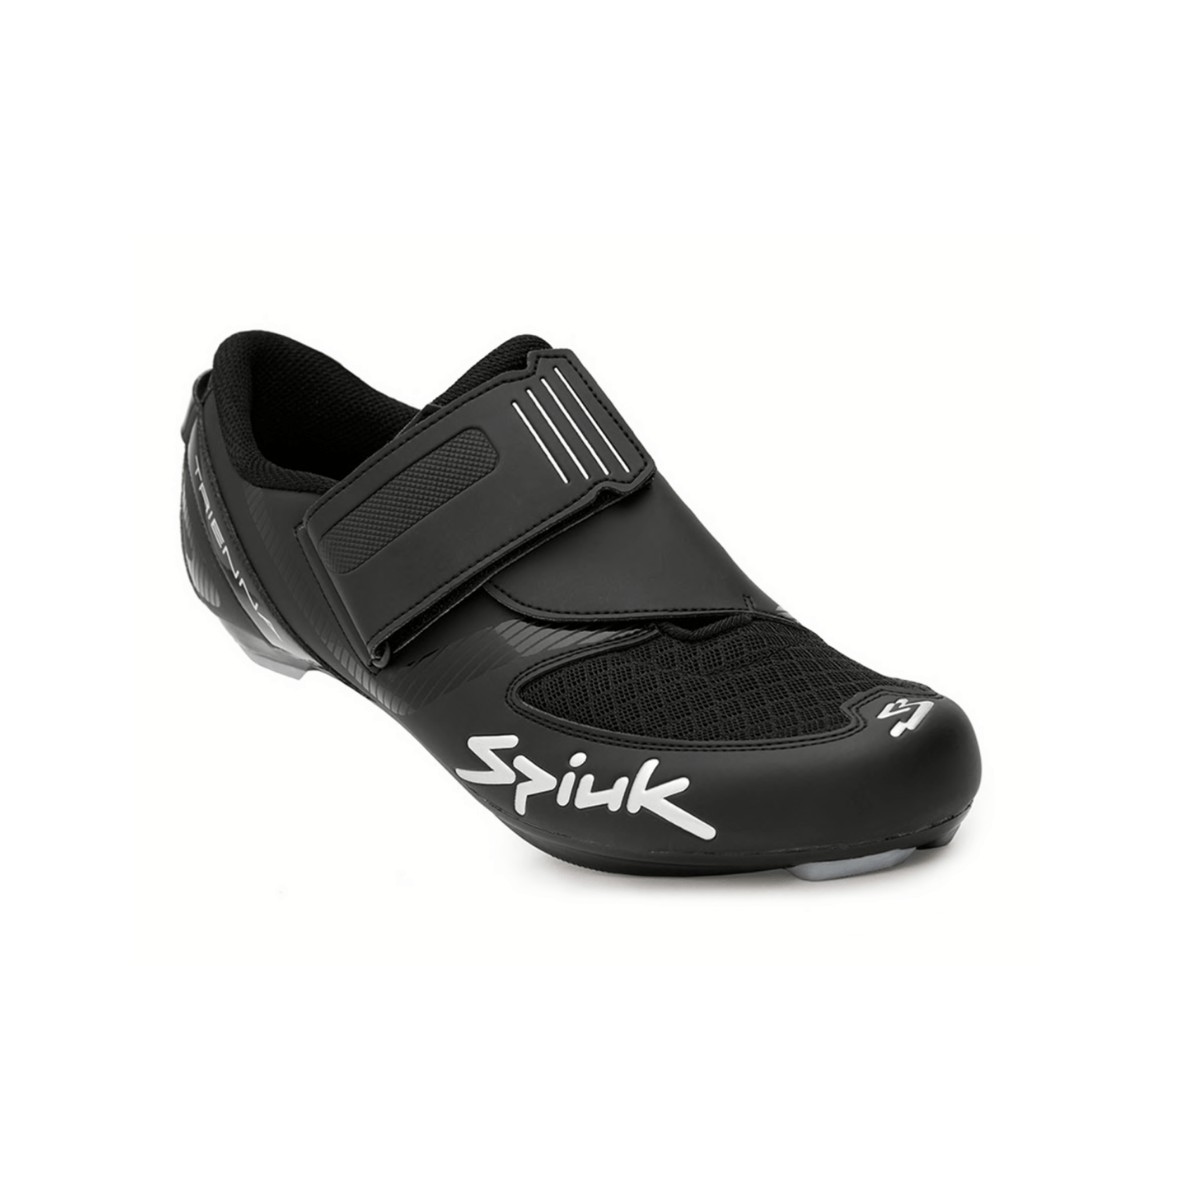 Spiuk Trienna Triathlon Matte Black Shoes, Size 42 - EUR